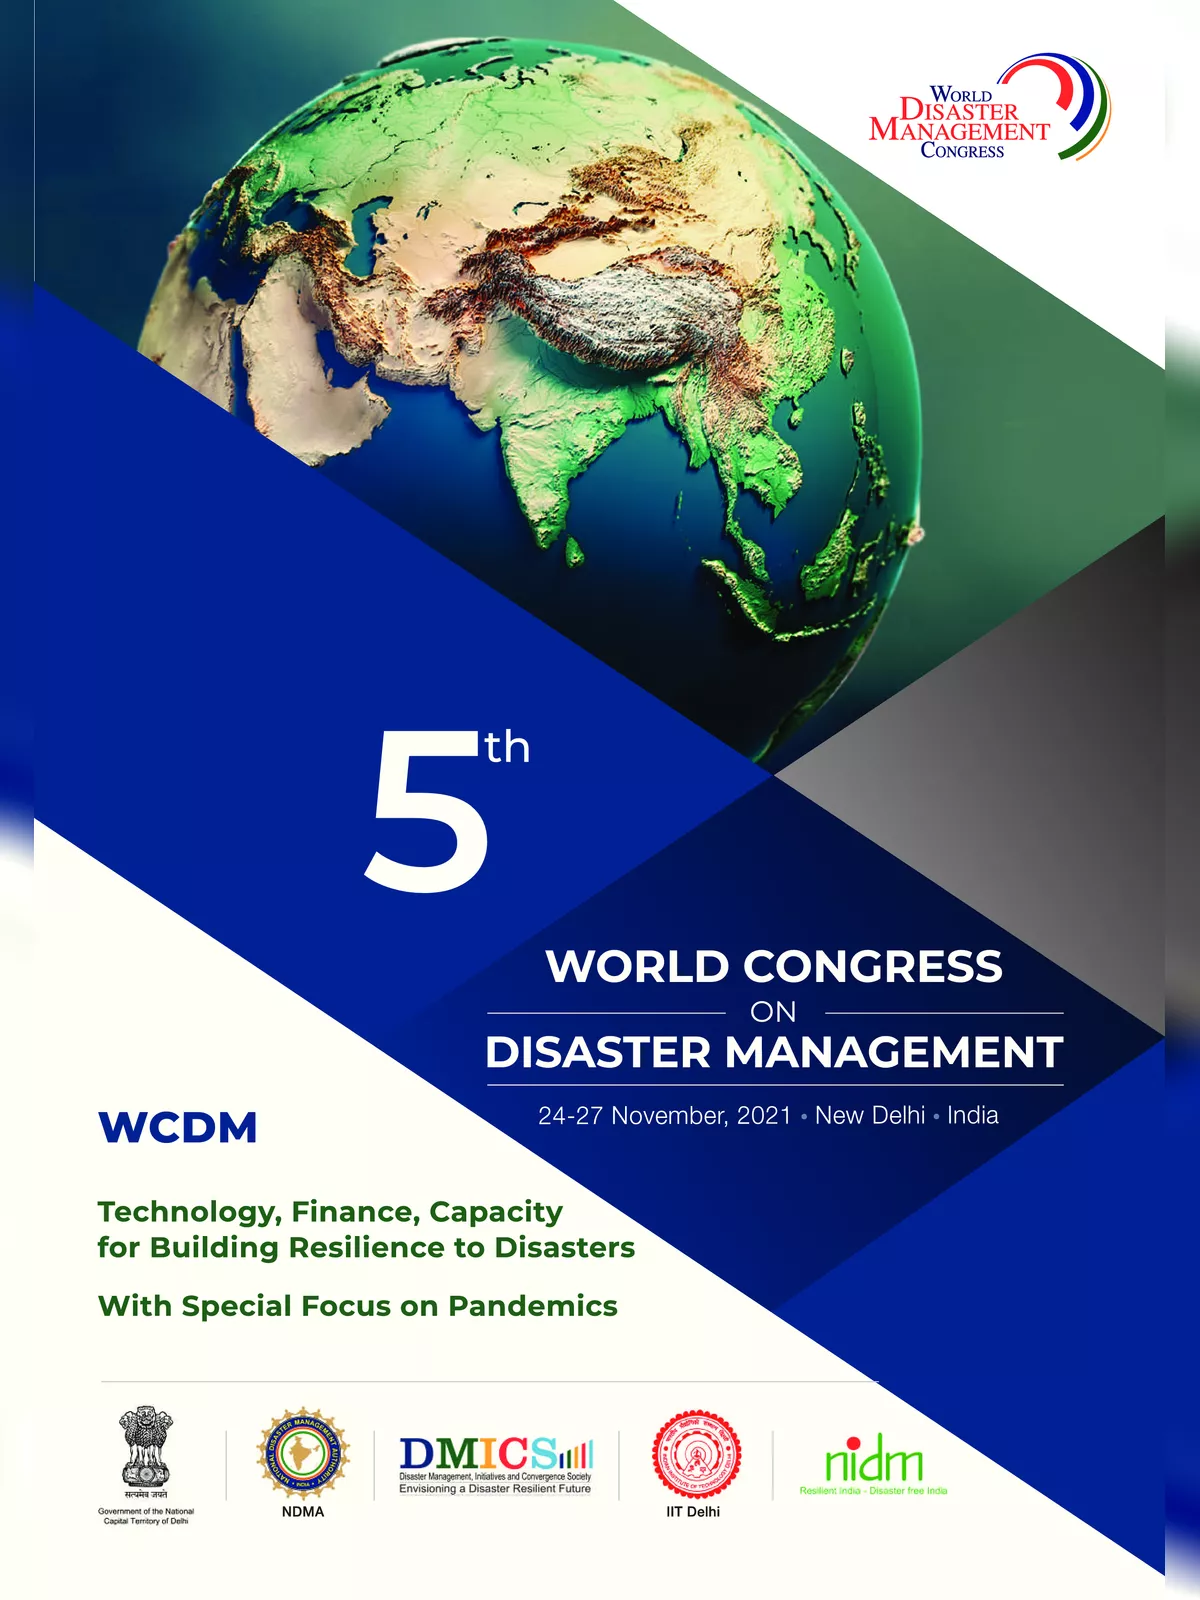 World Disaster Management Conference Brochure